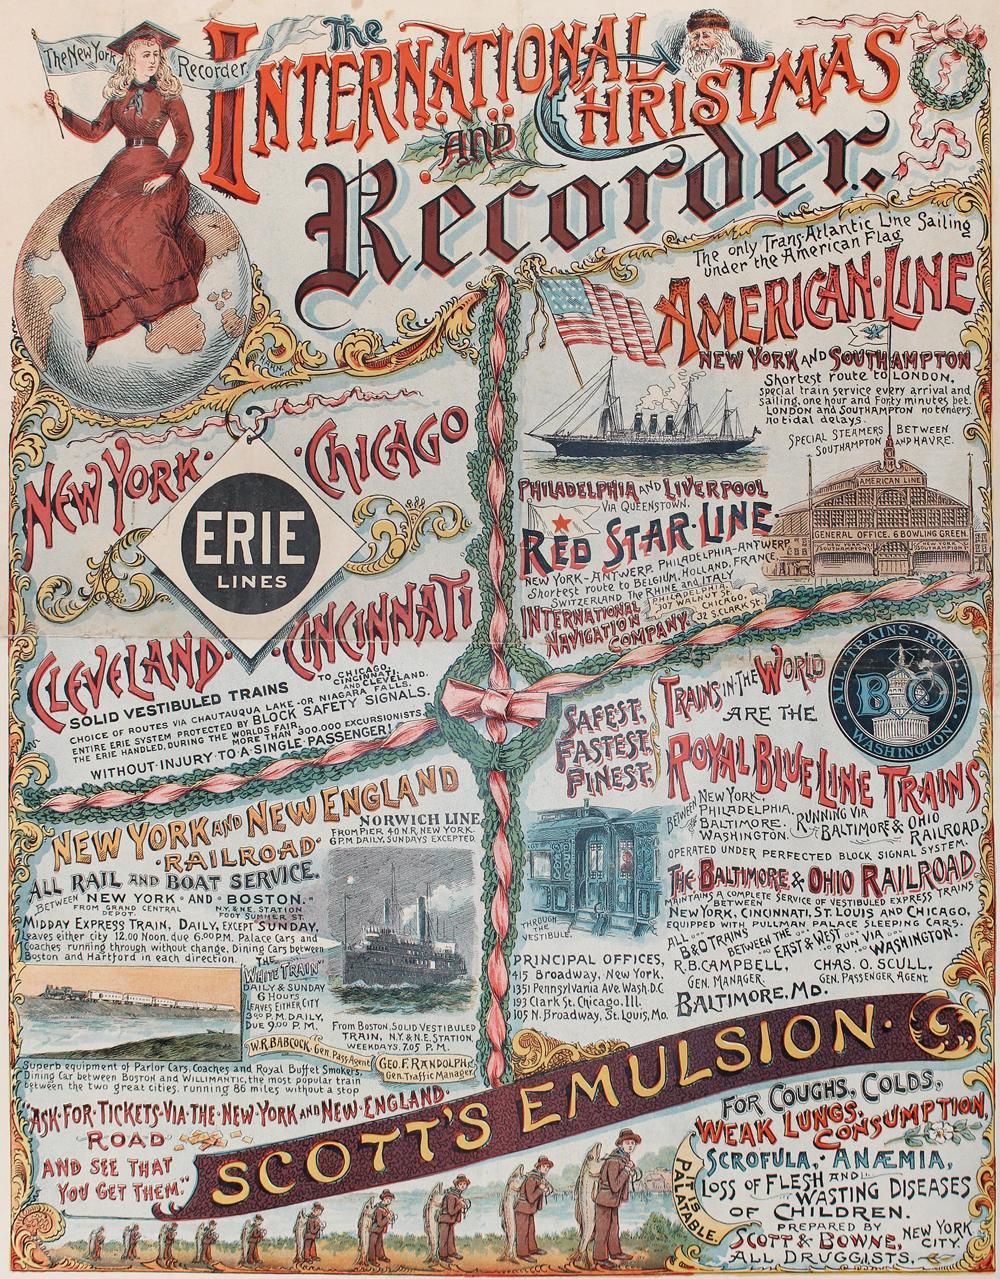 Der New York Recorder war eine Zeitung, die im späten 19. und frühen 20. Jahrhundert in New York City herausgegeben wurde. Sie war eine von vielen Zeitungen, die den Großraum New York versorgten, als Zeitungen noch die wichtigste Quelle für